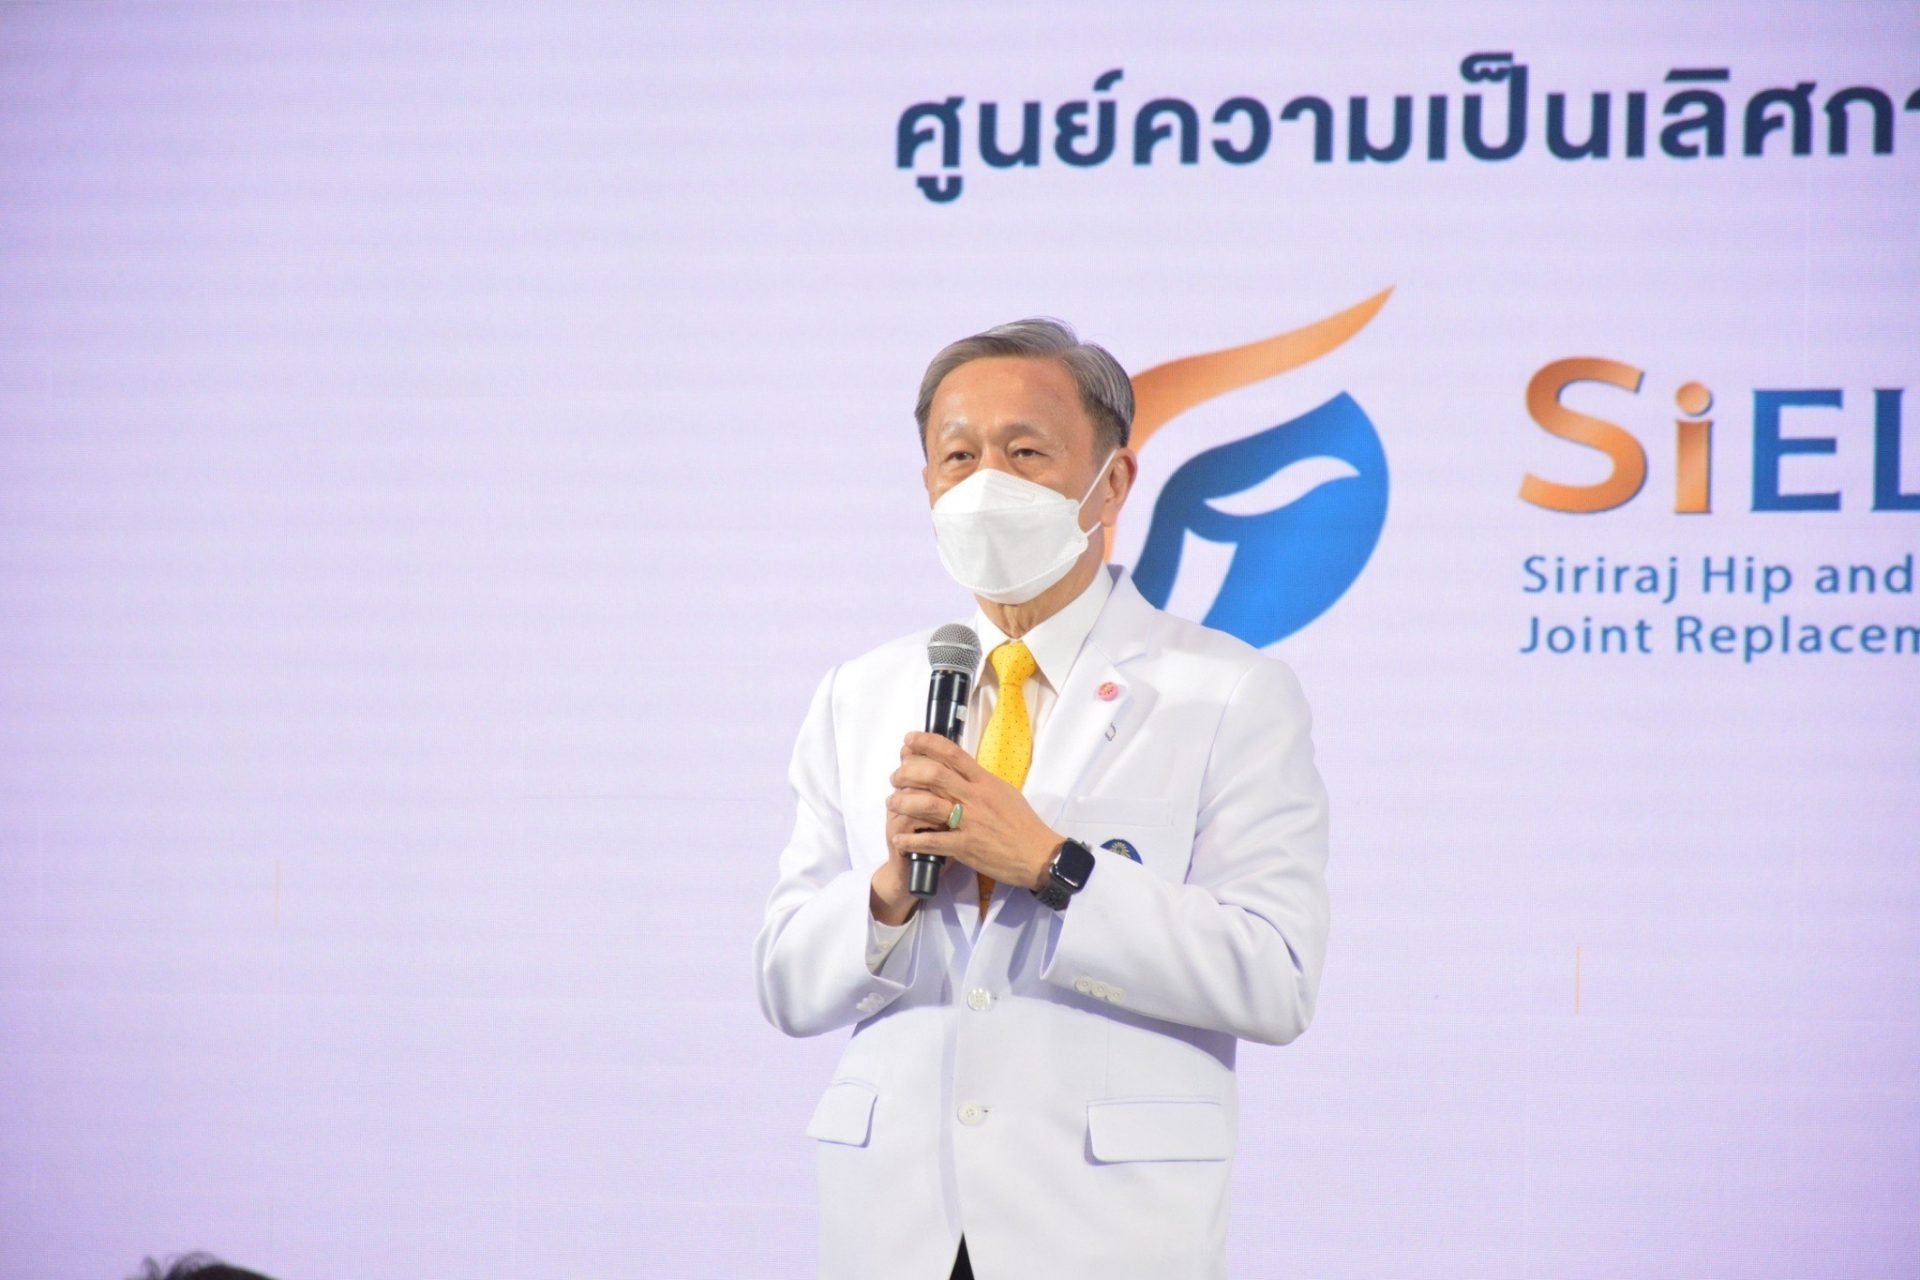 ศิริราชผนึก 3 รพ. ผ่าตัดข้อเทียมด้วยหุ่นยนต์แห่งแรกในไทย  รองรับสังคมผู้สูงอายุ ลดเวลารอคิวนาน 1-2 ปี